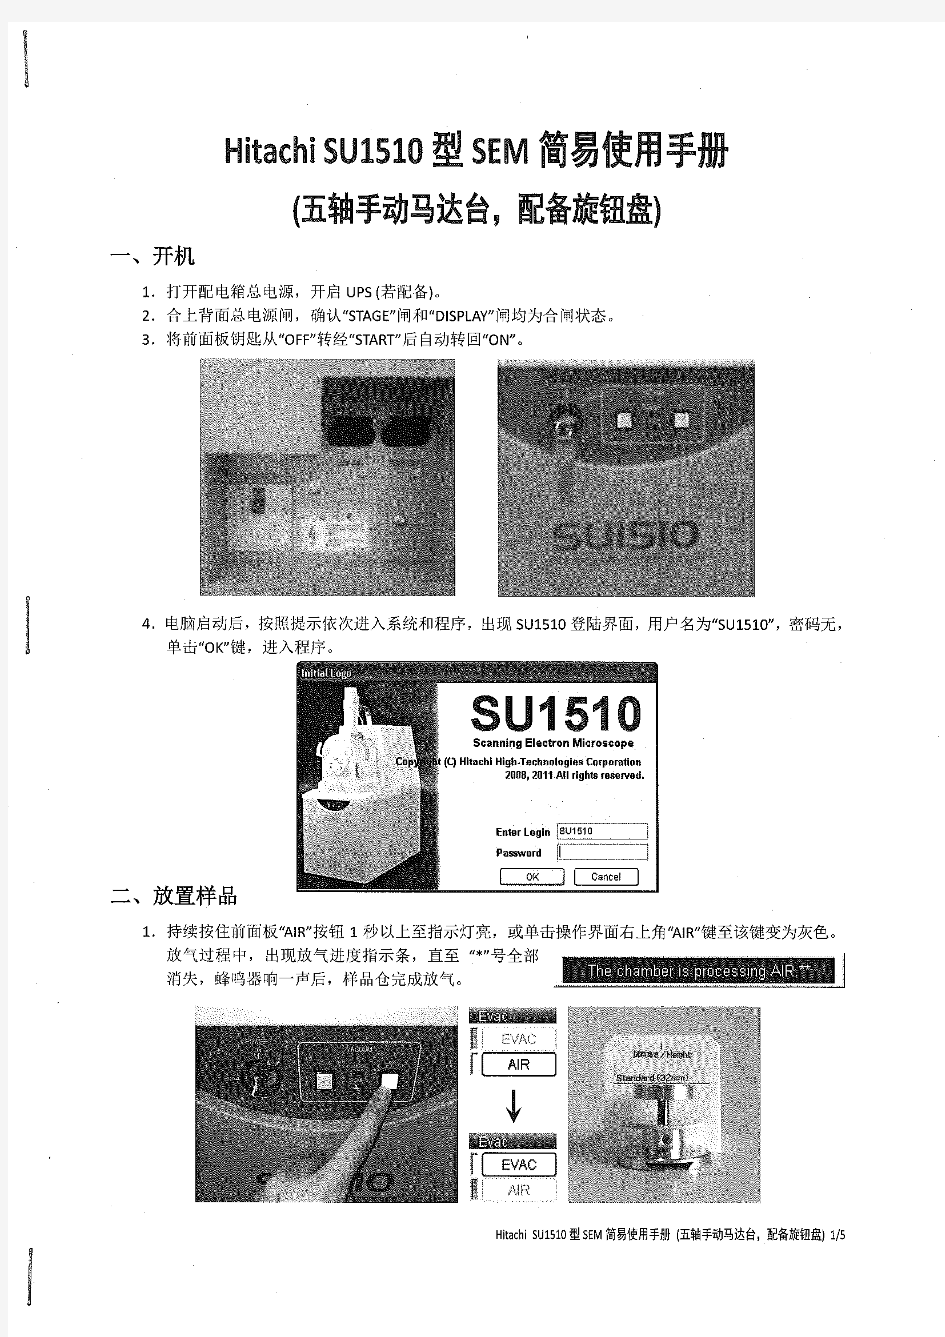 Hitachi Su1510型 SEM 简易使用手册